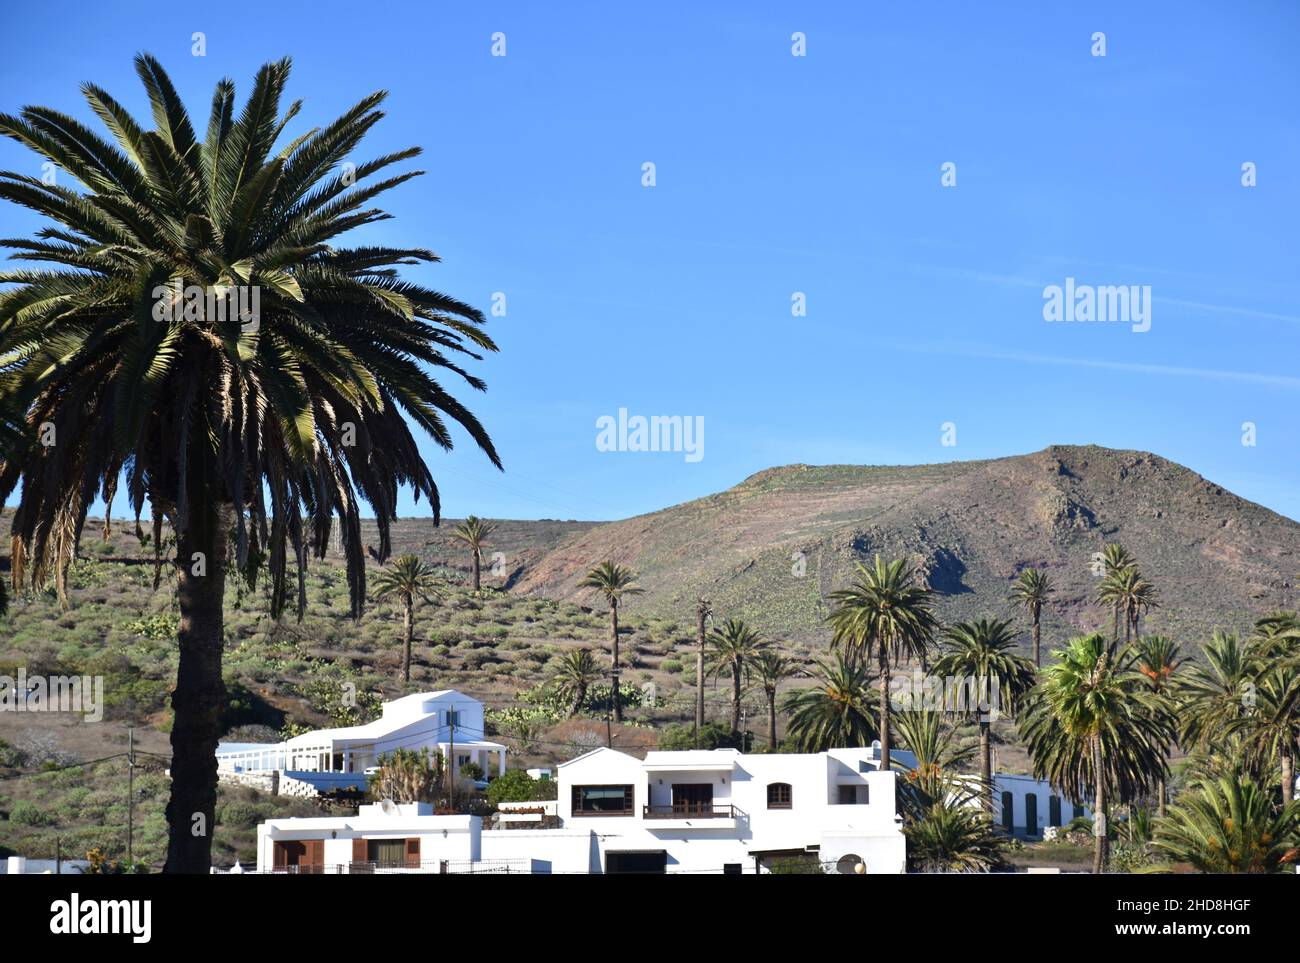 Valle panoramica con case bianche e palme vicino a Haria, Lanzarote, isole Canarie, Spagna Foto Stock